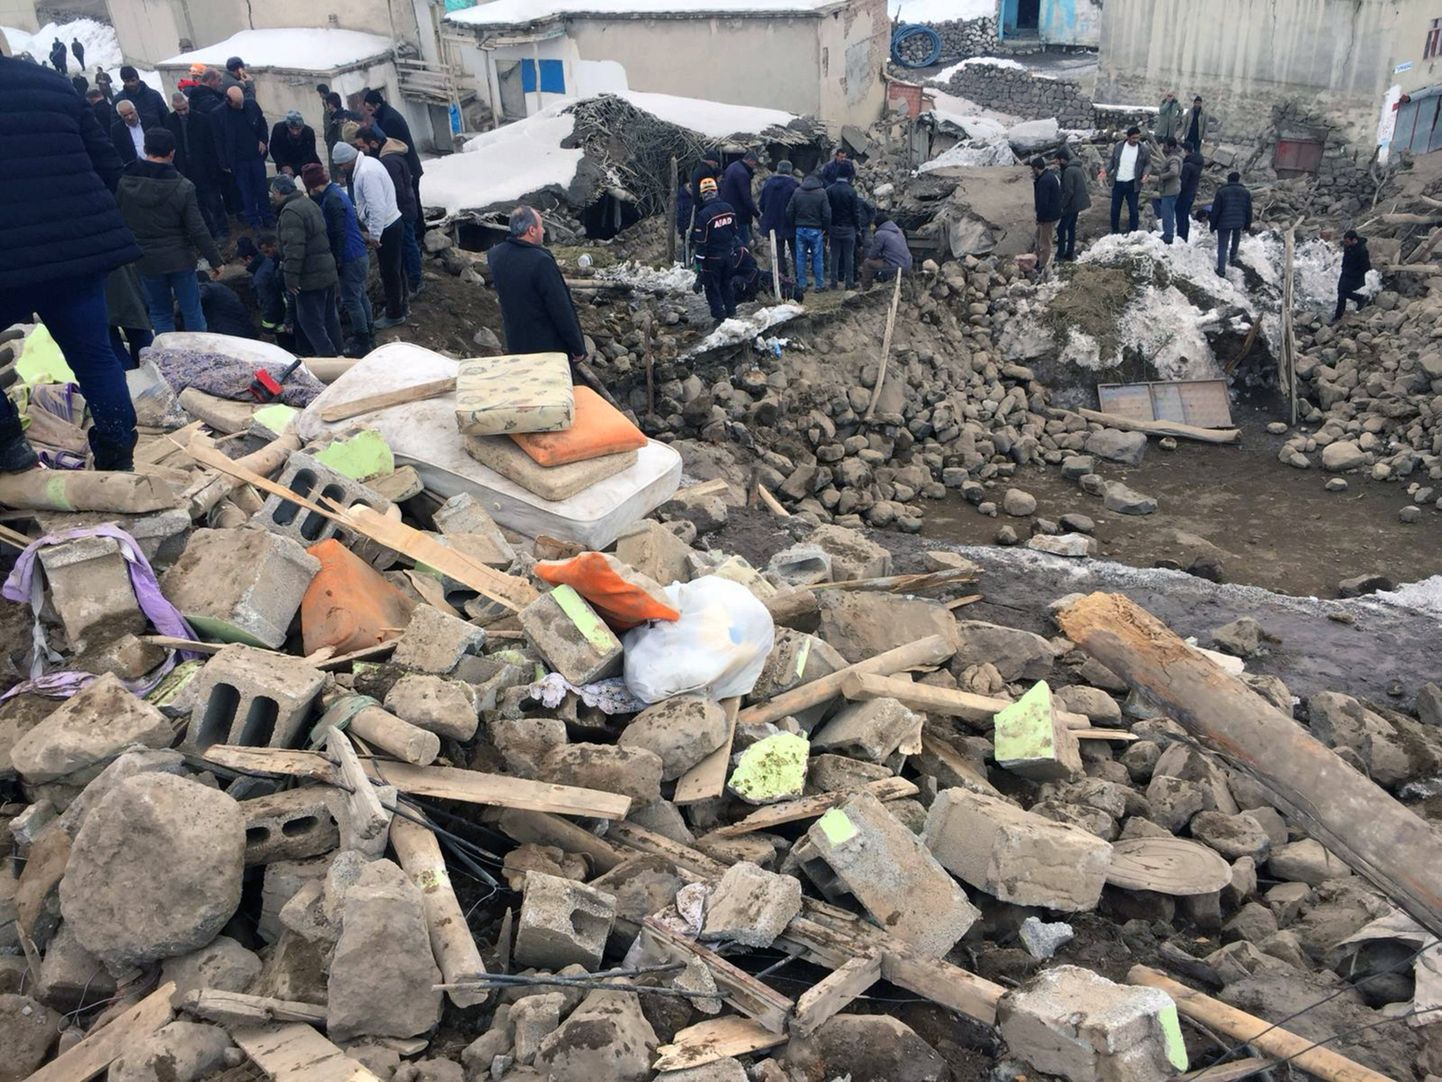 Kaader jaanuaris toimunud maavärinast Türgis. Foto on illustreeriv.